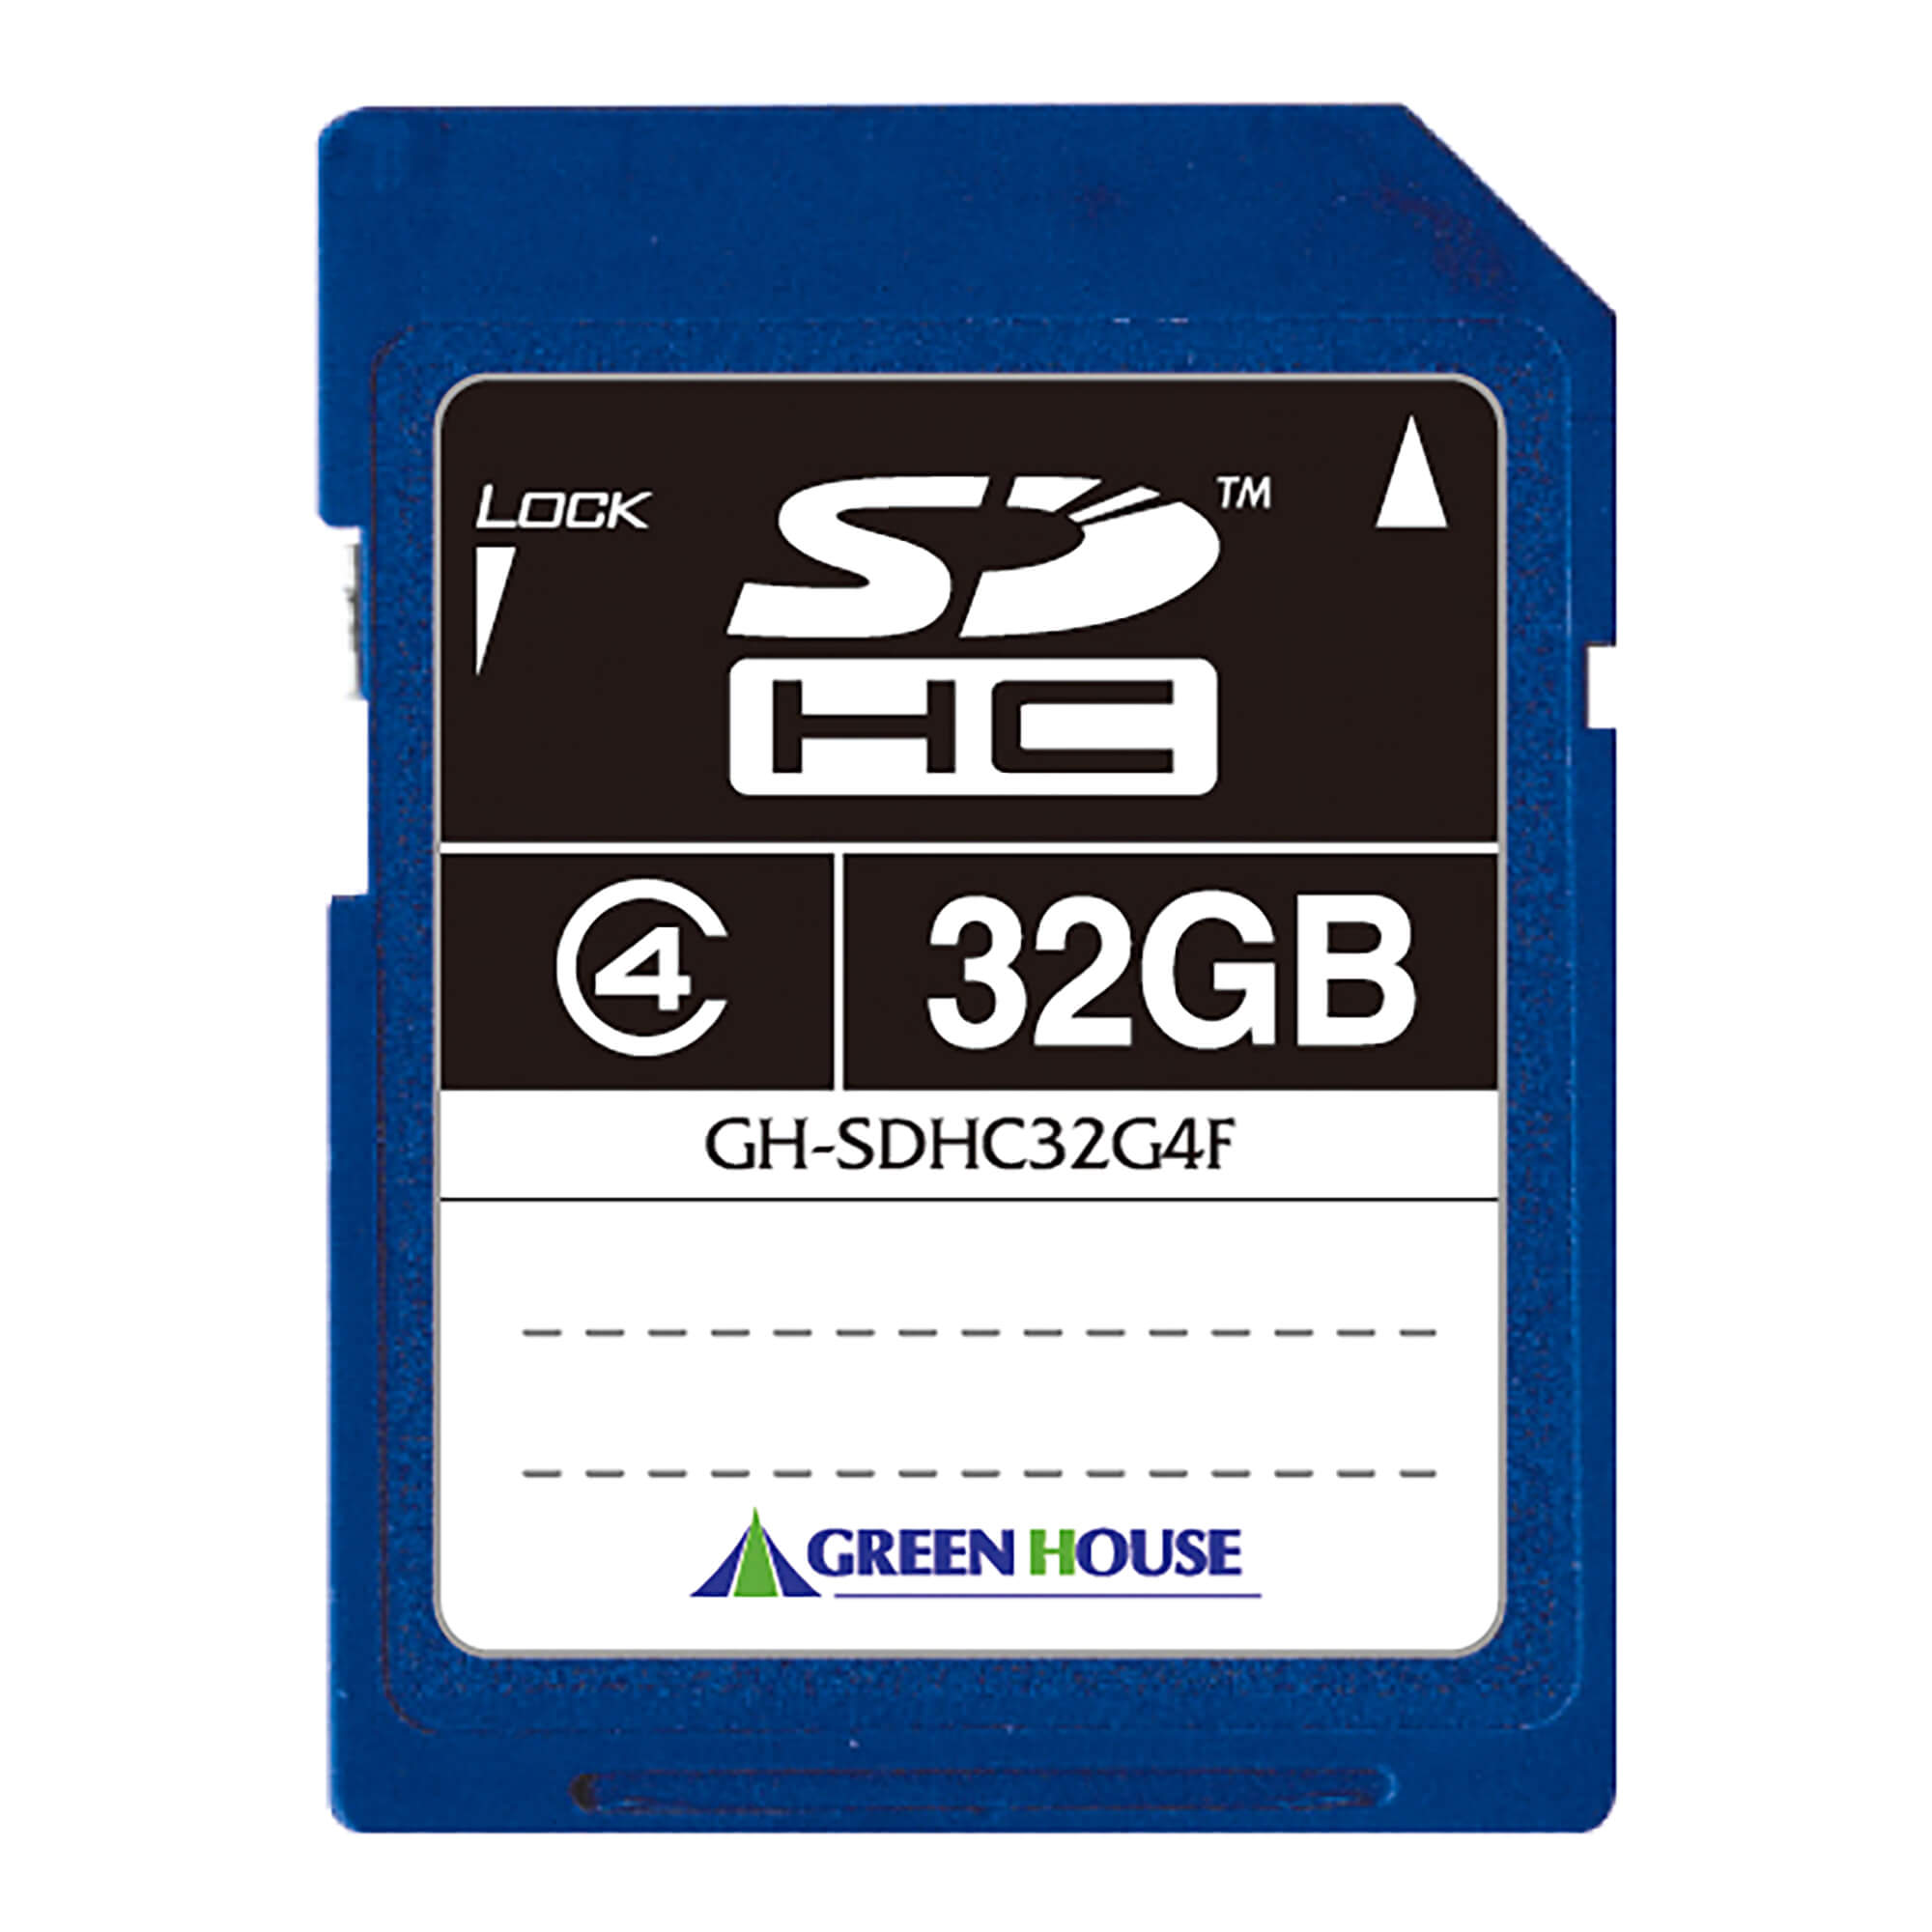 SDHCメモリーカード(4GB～32GB) | GH-SDHC*4Fシリーズ | GREEN HOUSE グリーンハウス